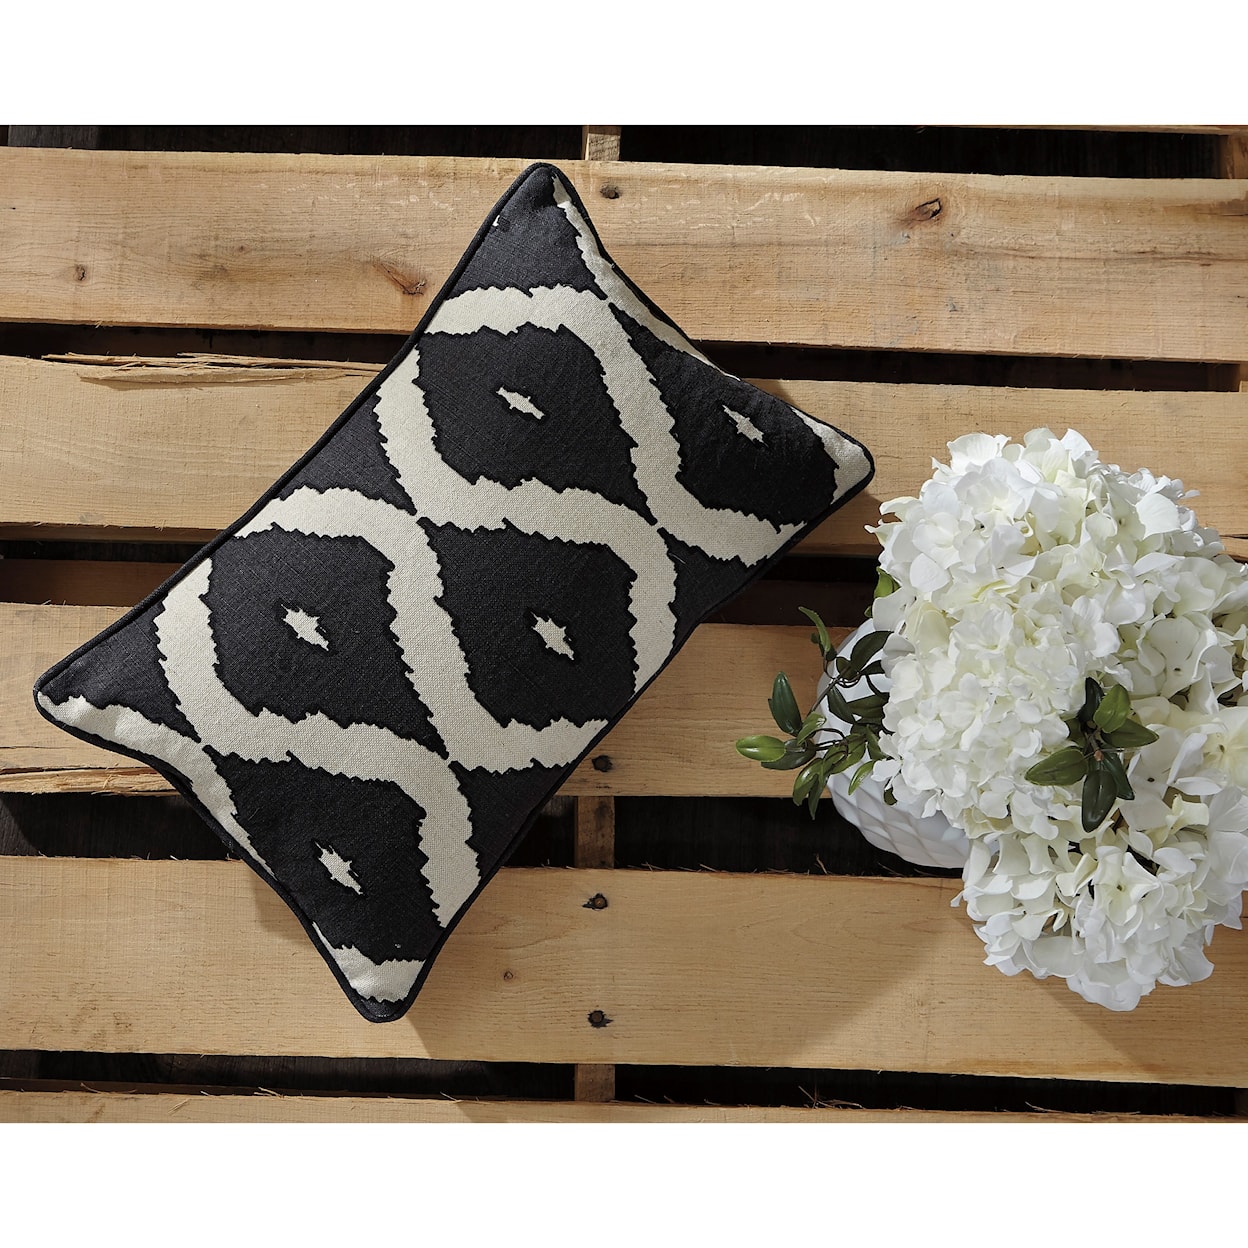 Signature Design by Ashley Furniture Pillows Tildy - Black/Natural Lumbar Pillow